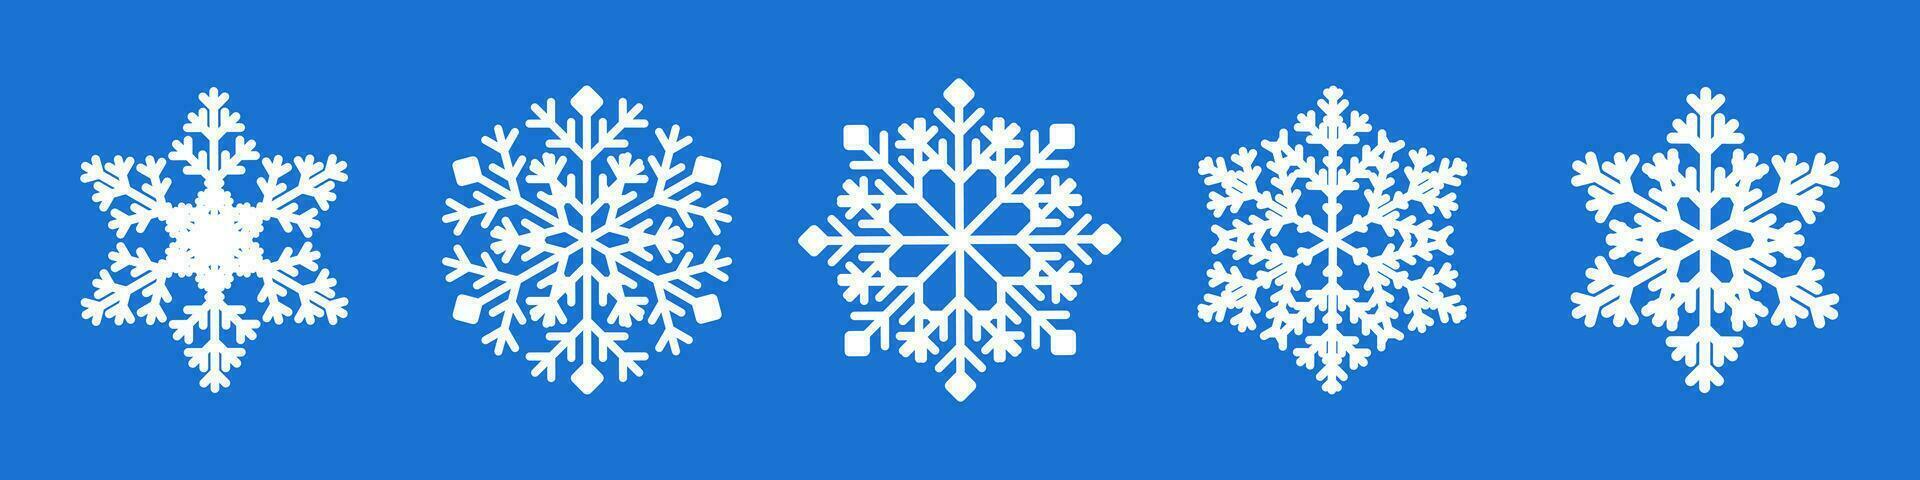 vit snöflinga samling isolerat på blå bakgrund. platt snö ikoner, snö flingor silhuett. ny år uppsättning snöflingor för jul baner, kort vektor